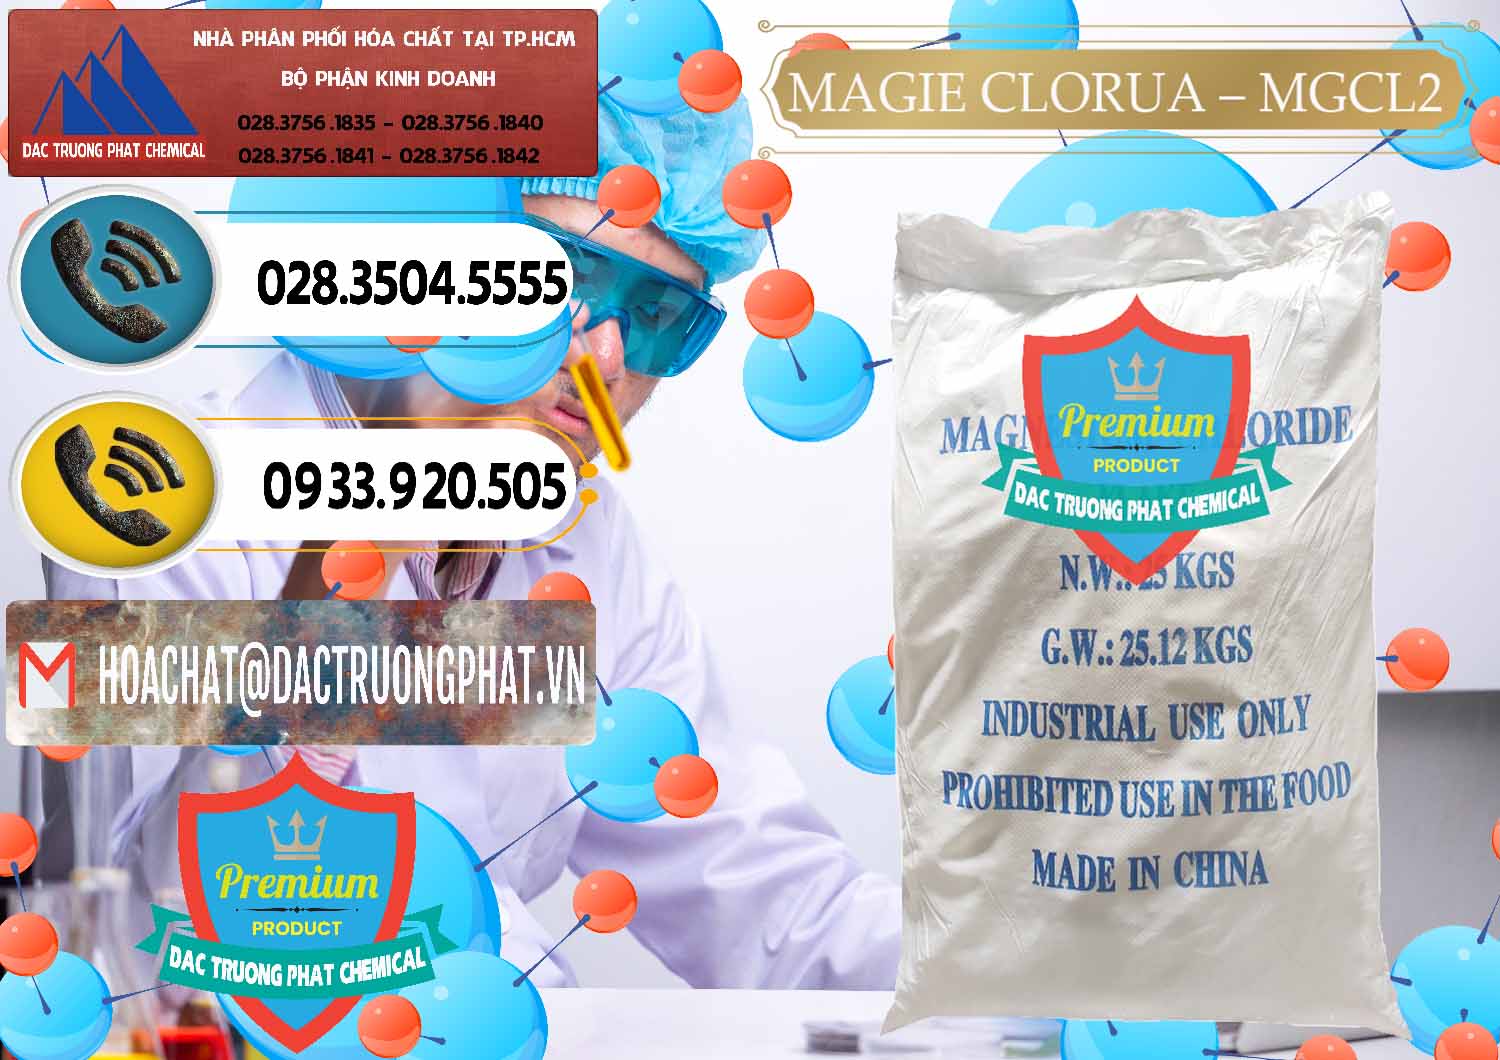 Công ty chuyên cung cấp - bán Magie Clorua – MGCL2 96% Dạng Vảy Trung Quốc China - 0091 - Nhà phân phối _ cung ứng hóa chất tại TP.HCM - hoachatdetnhuom.vn